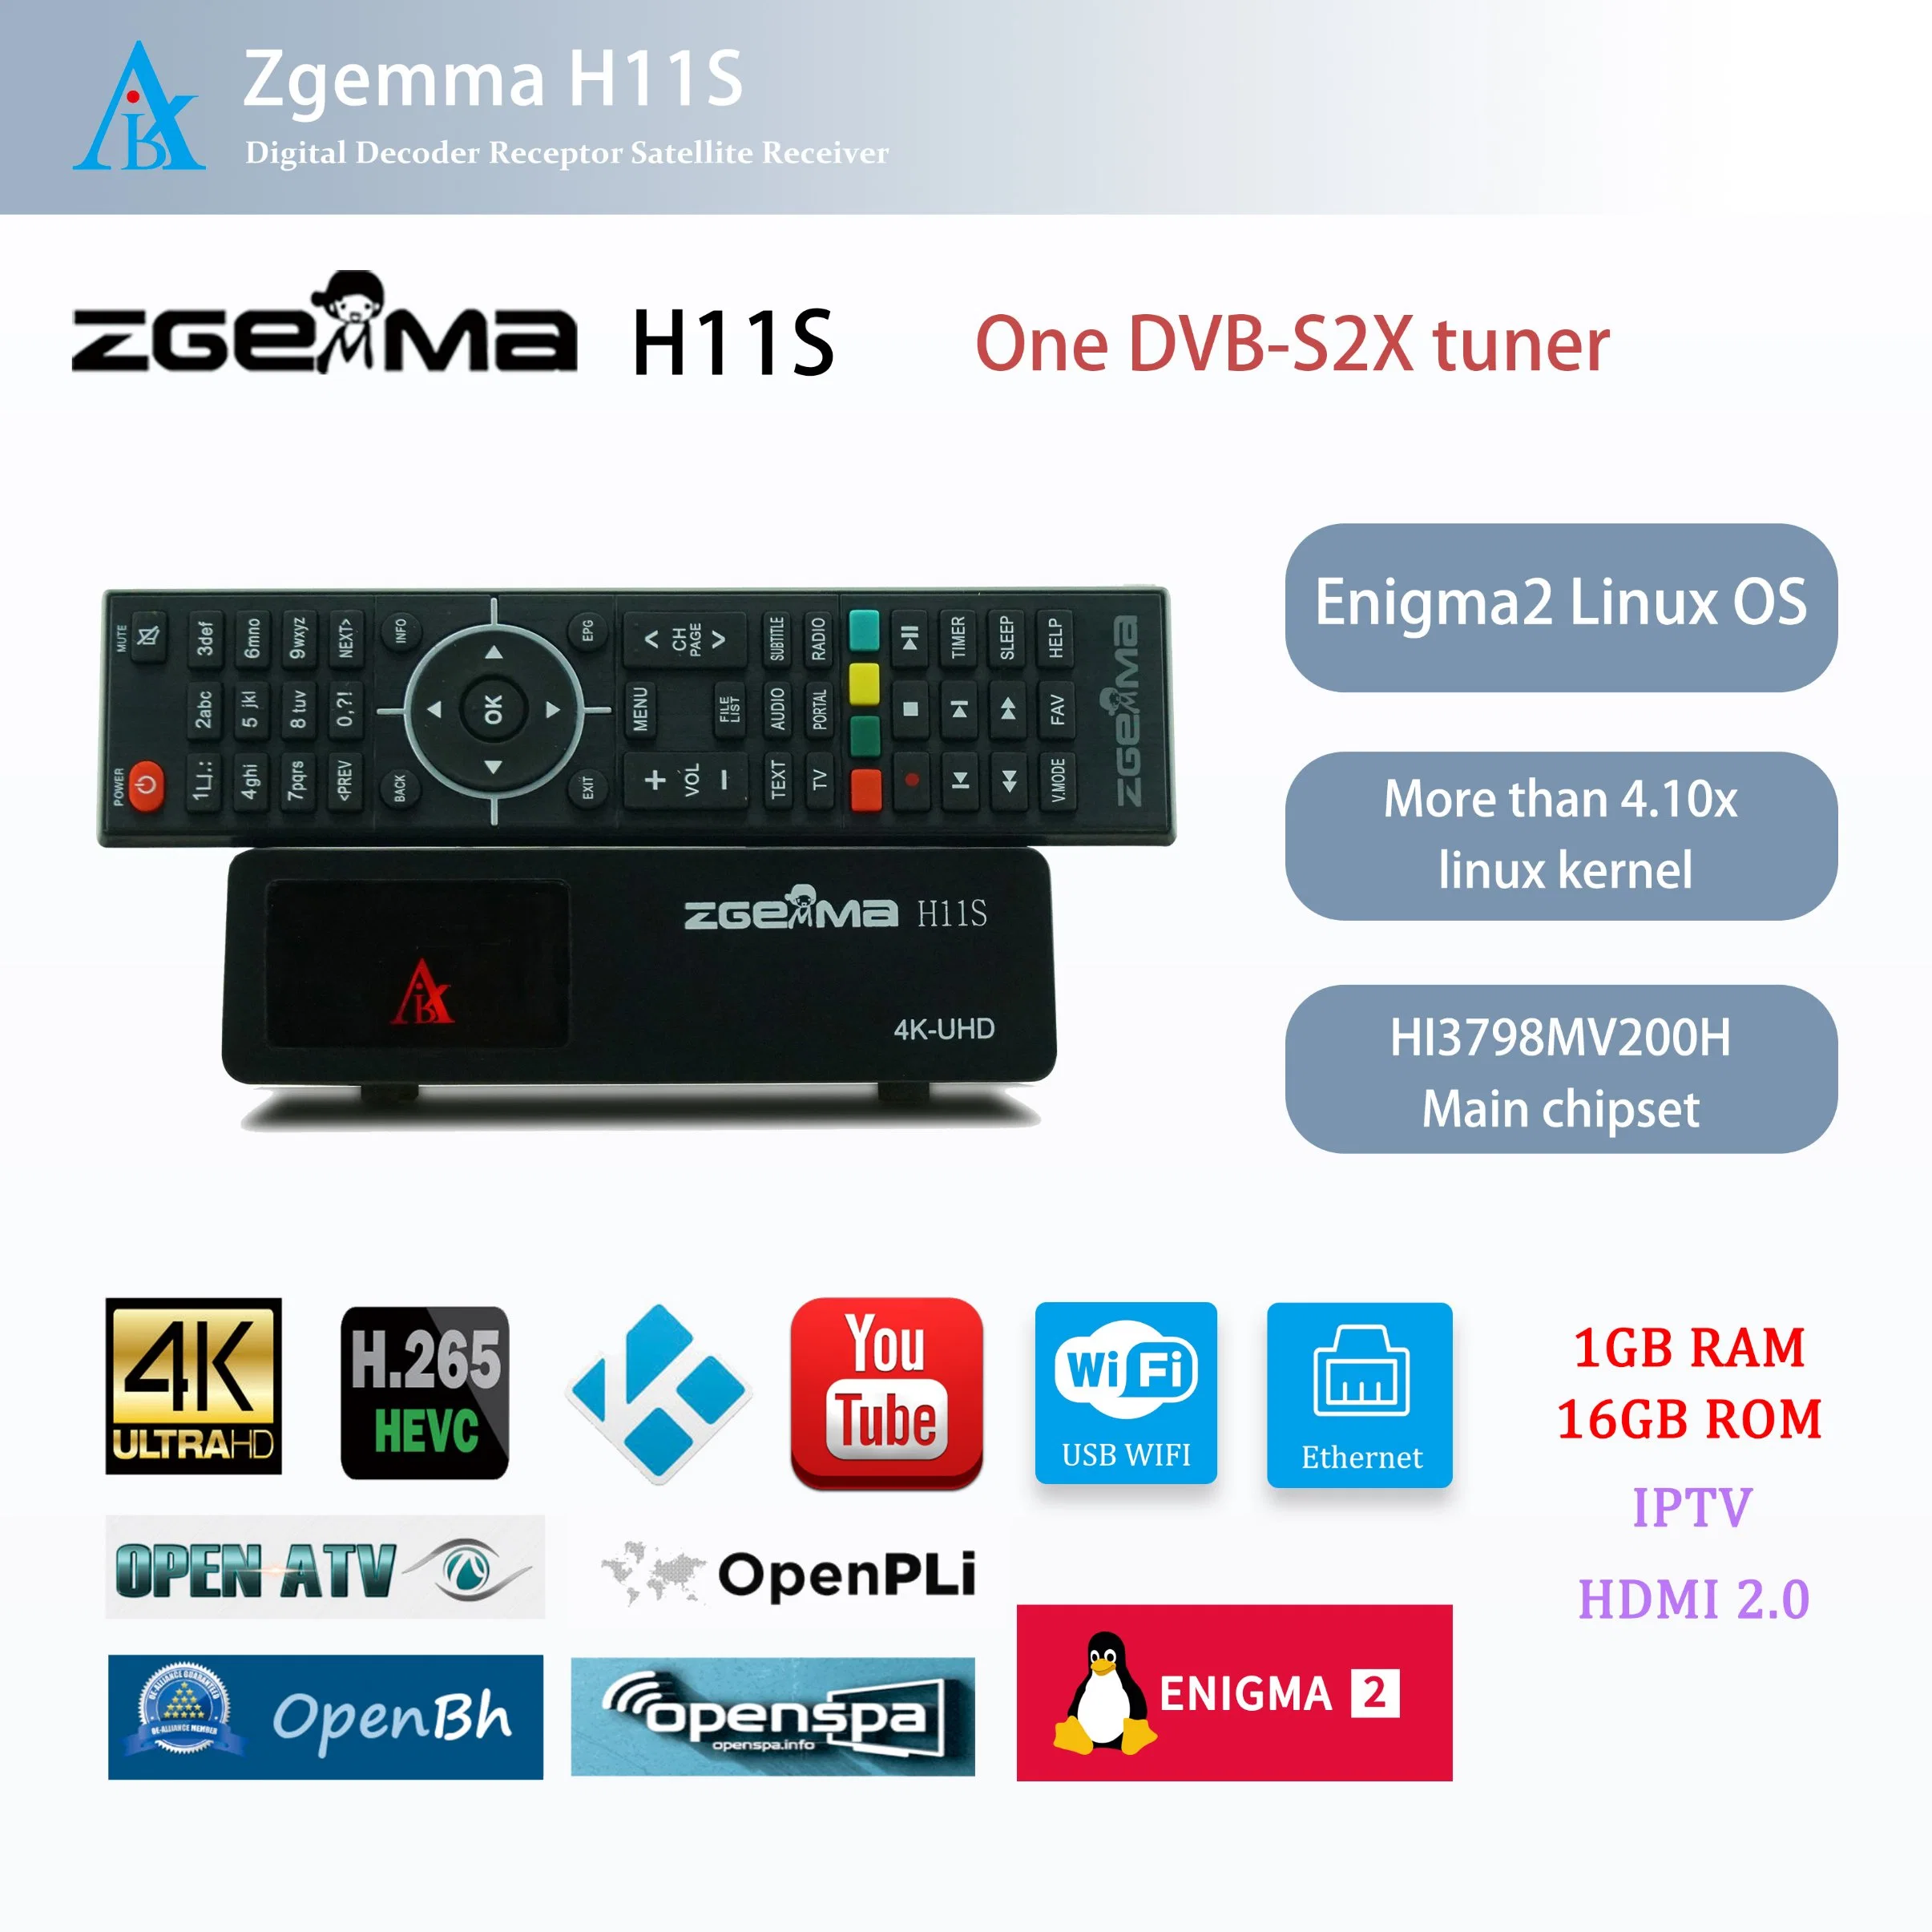 Hochinnovative Zgemma H11s Satellitenempfänger – Enigma2 Linux OS, ein DVB-S2X Tuner, TV Decoder